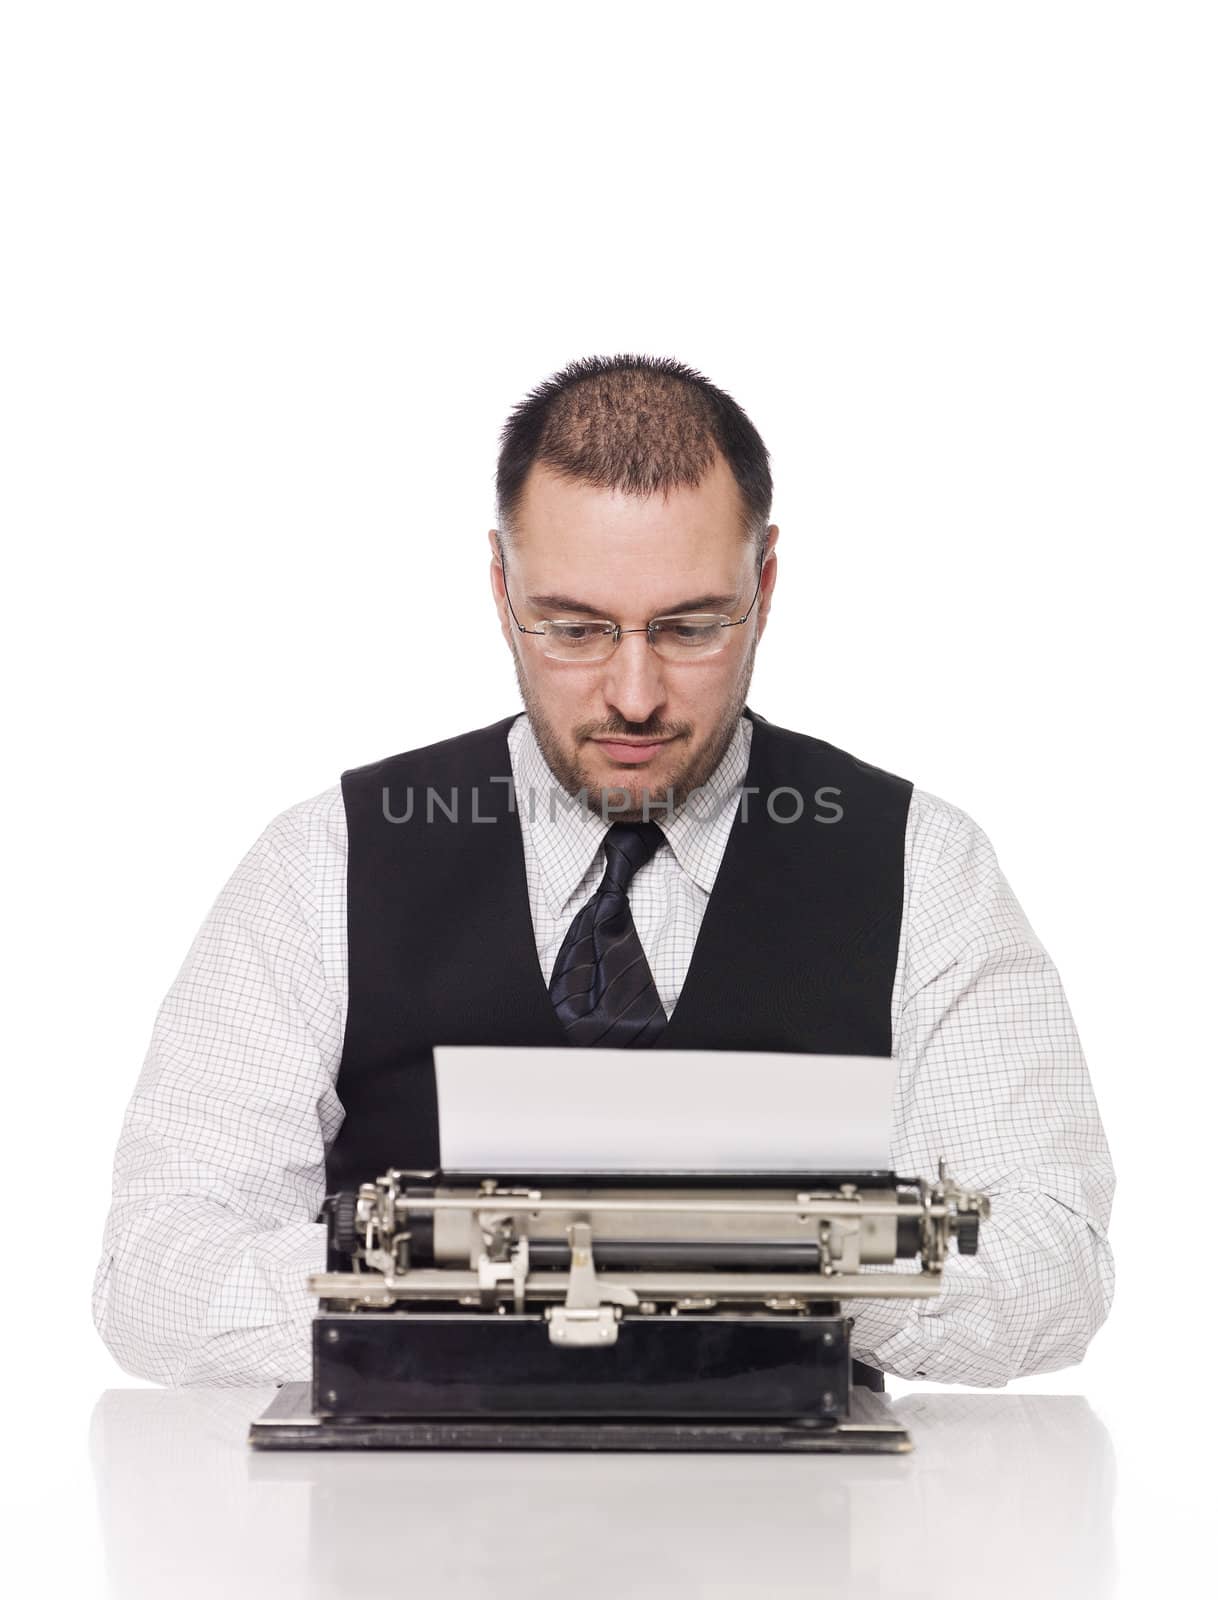 Man writing on a vintage typewriter by gemenacom